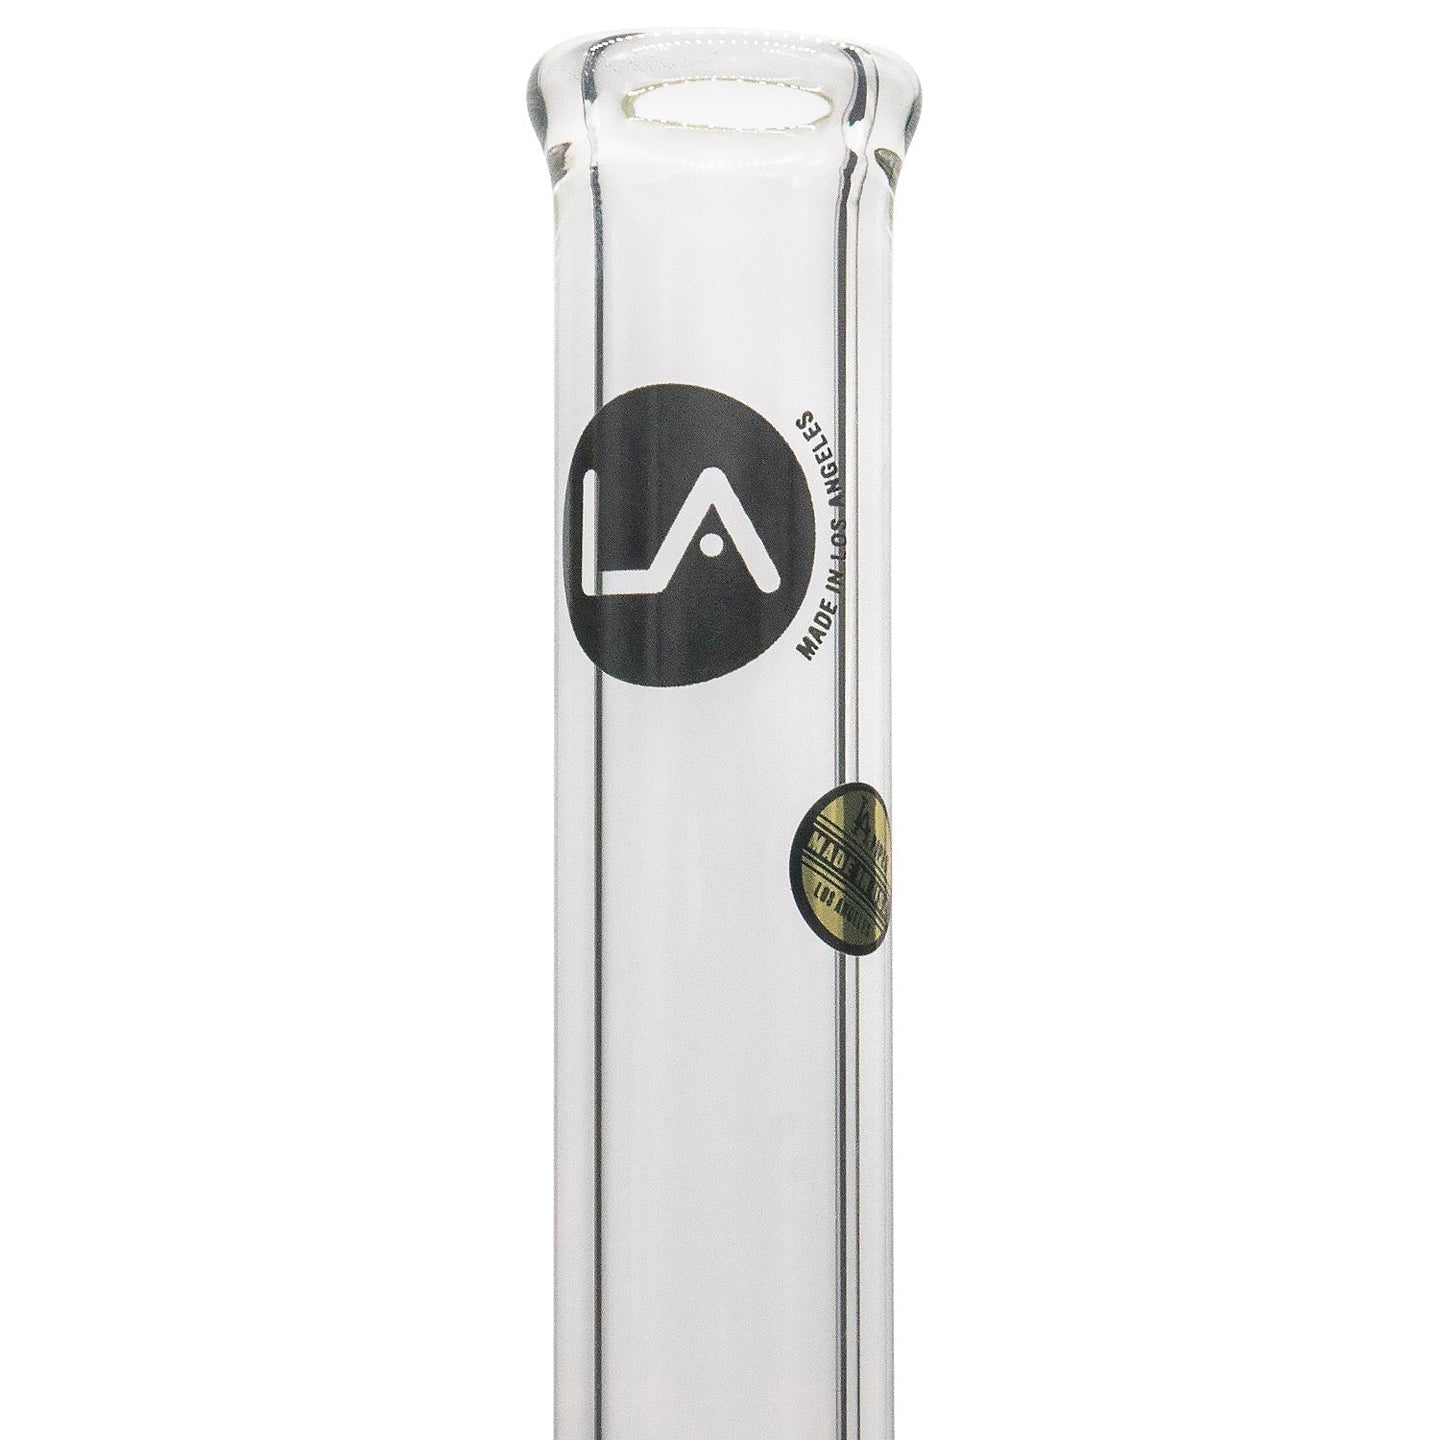 LA Pipes "Alchemist" Beaker Bong - Glasss Station